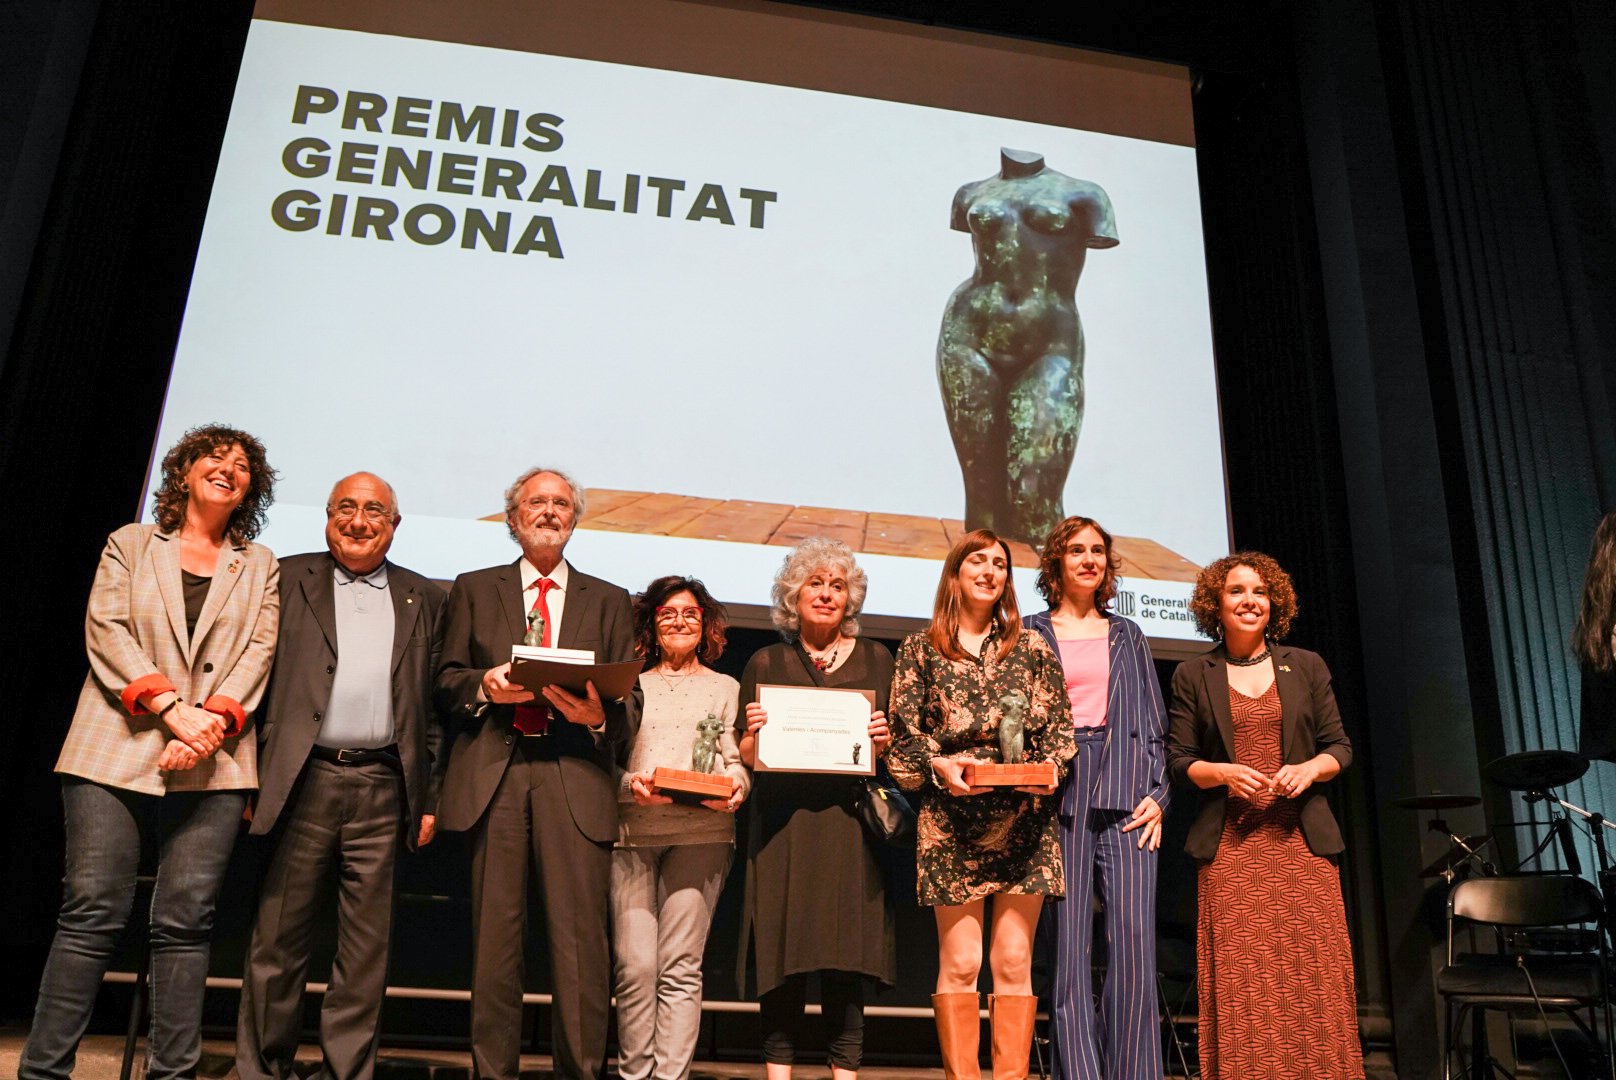 Premiats de la primera edició dels Premis Generalitat Girona.